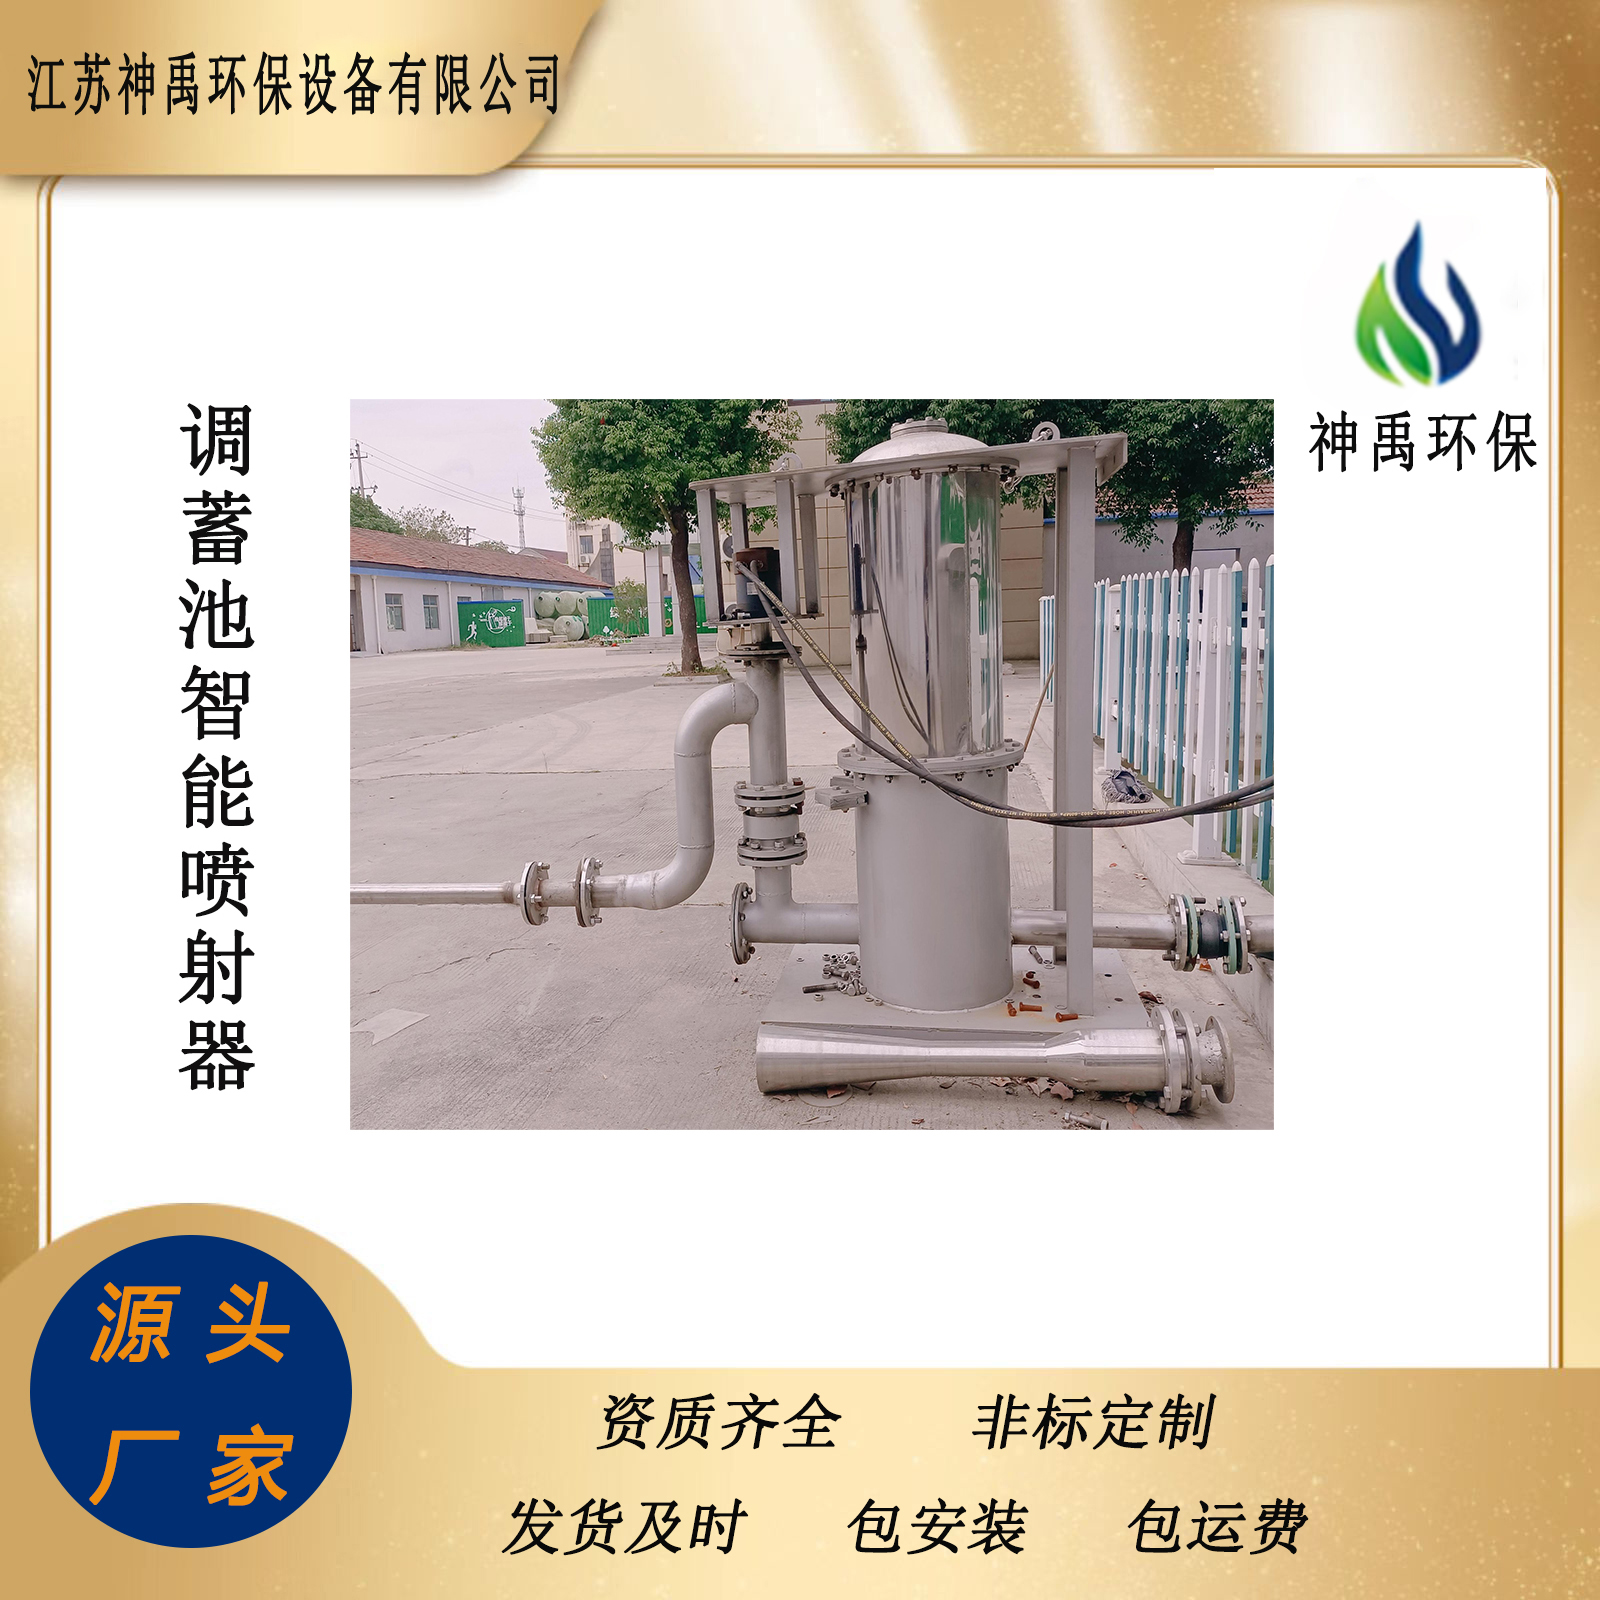 广东梅州智能喷射器蓄水池冲洗设备